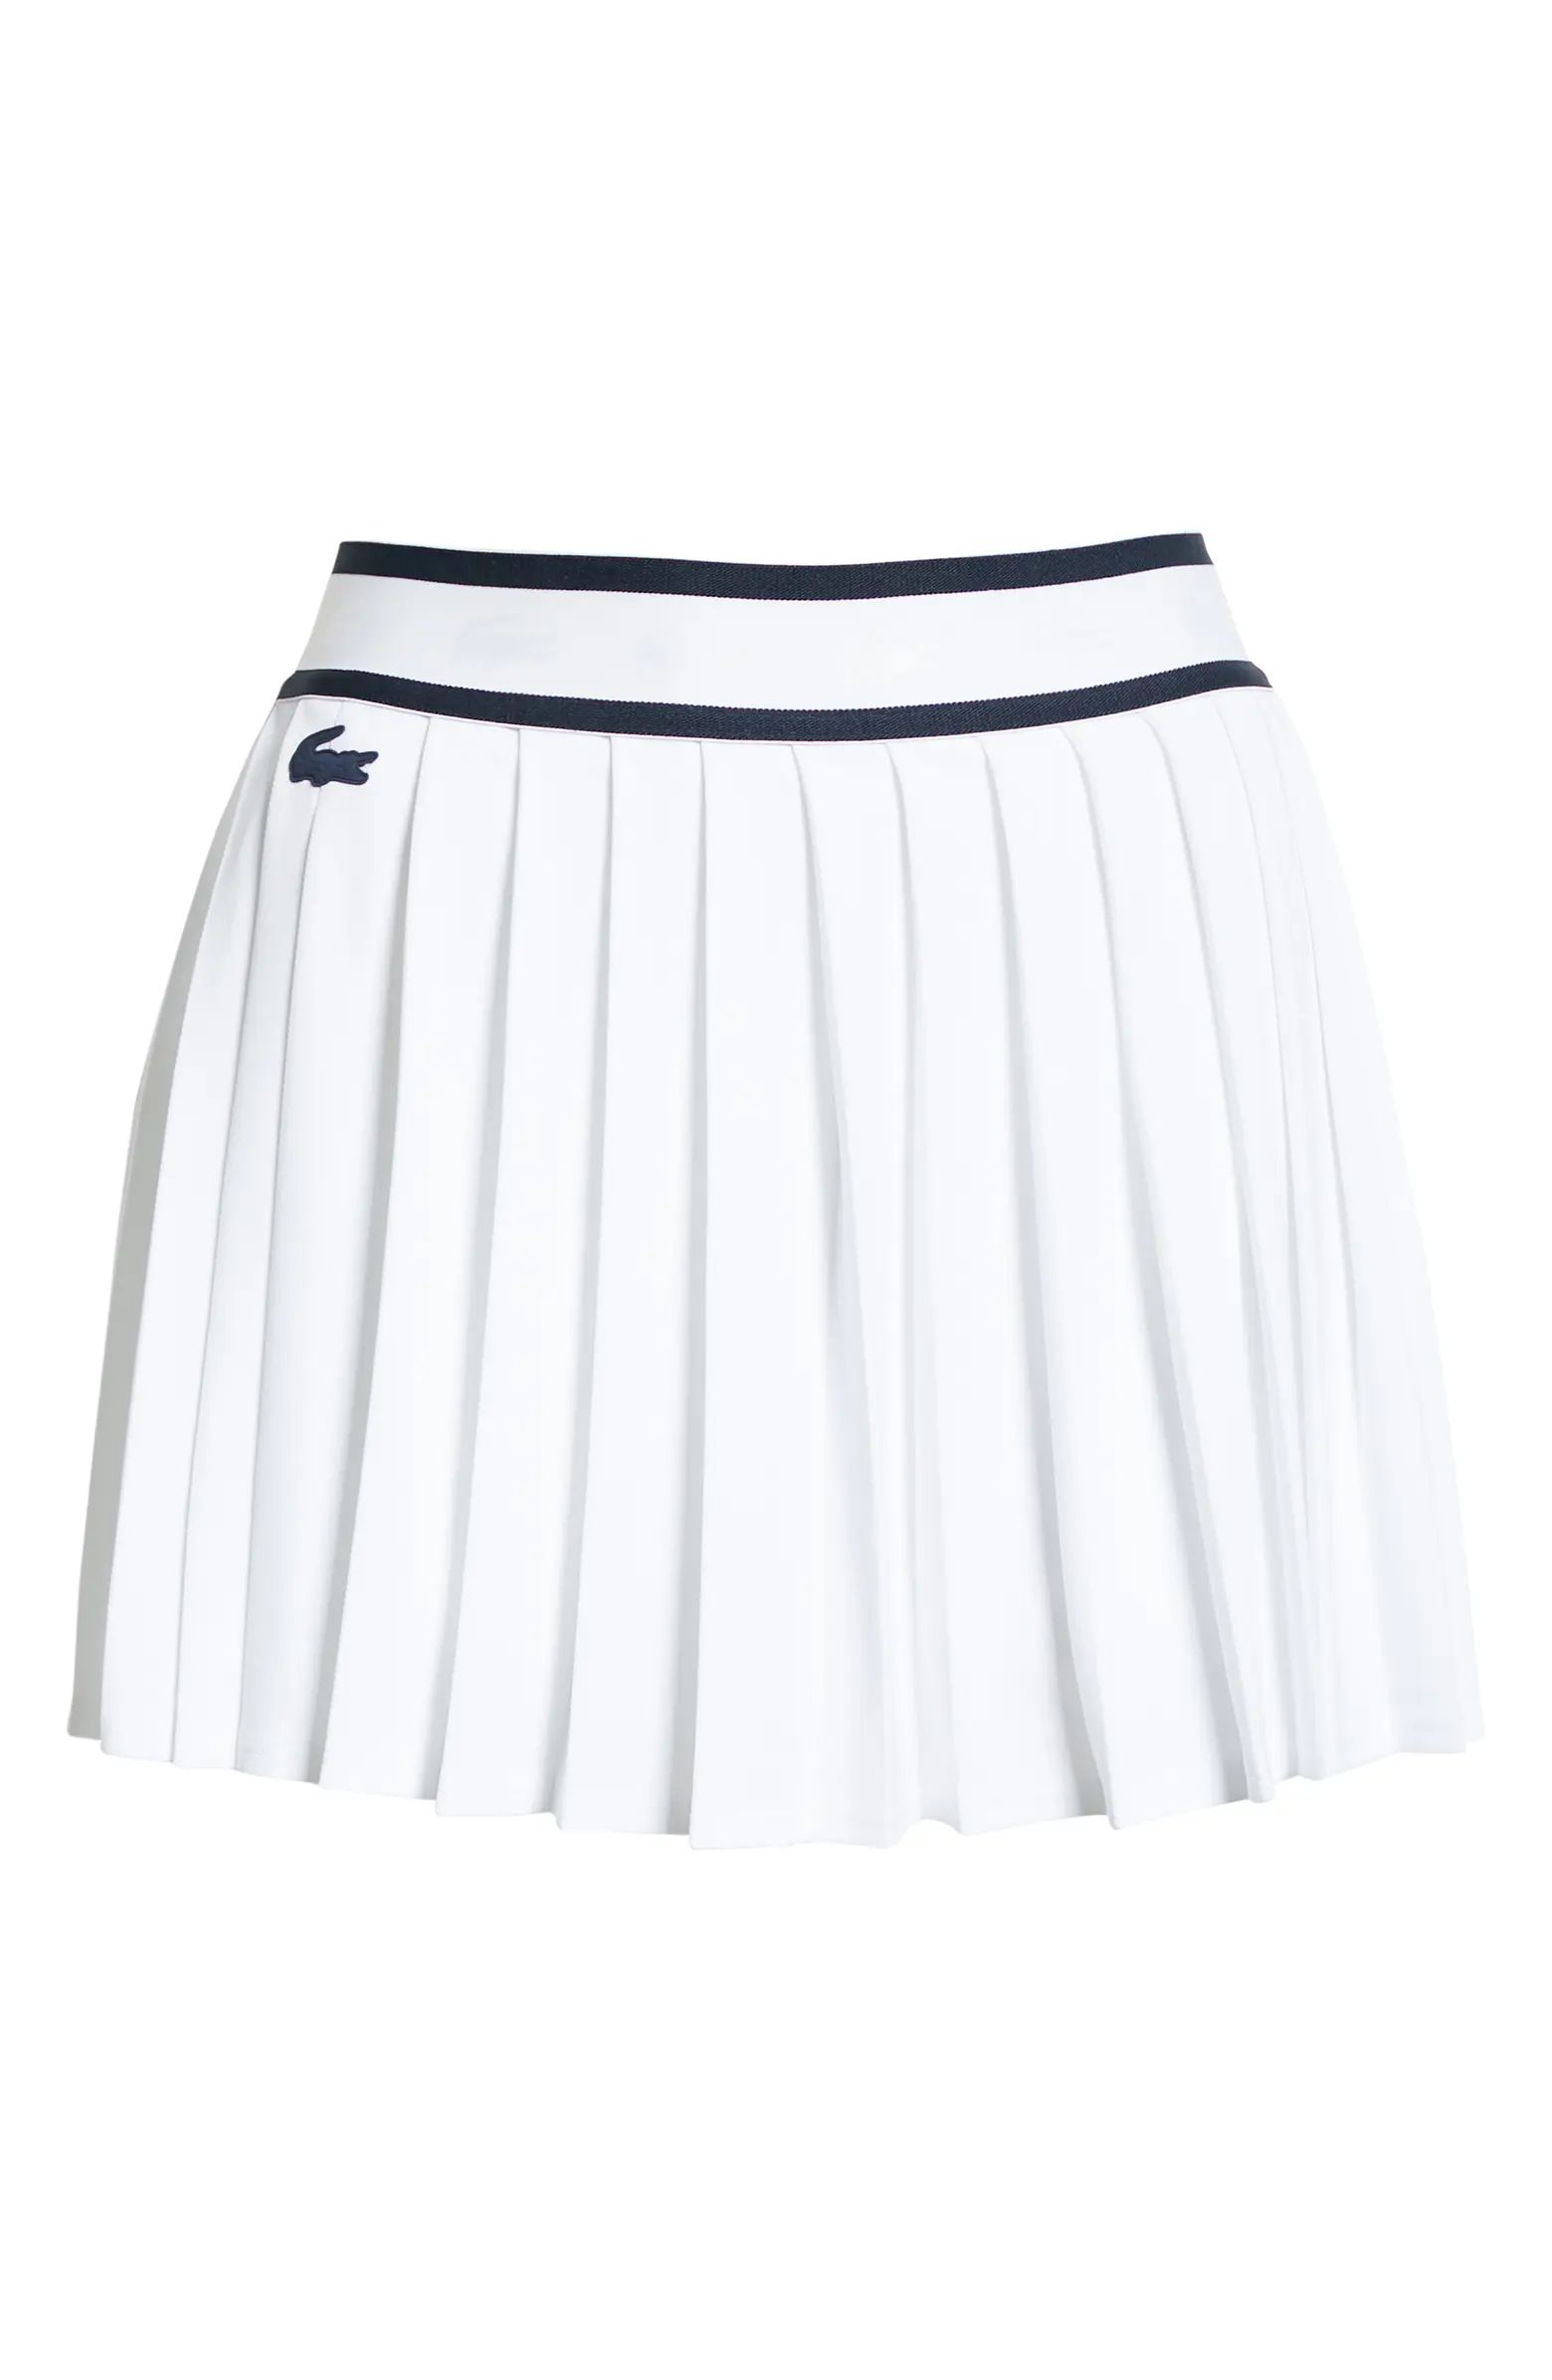 Sport Light Pleated Tennis Skirt | Nordstrom